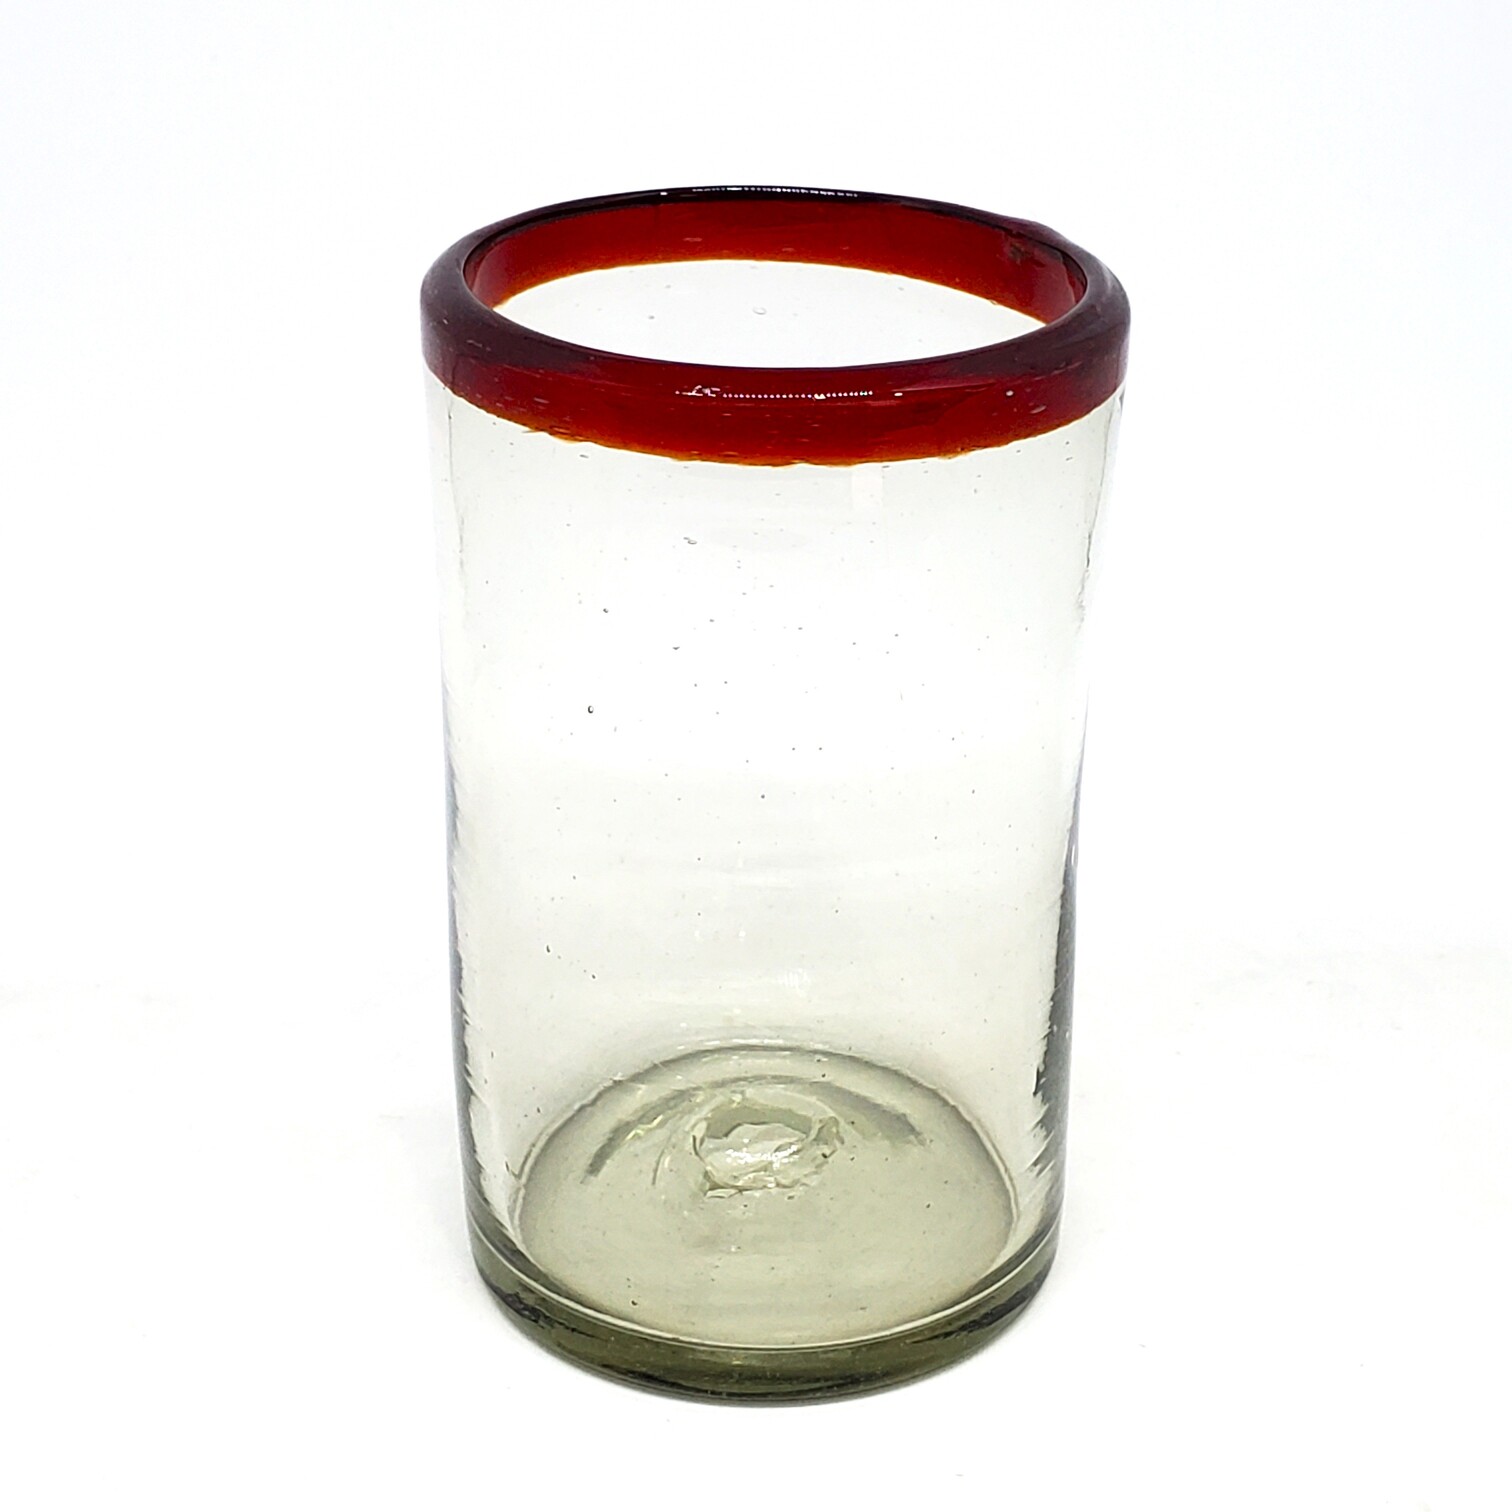 Ofertas / Juego de 6 vasos grandes con borde rojo rub� / �stos artesanales vasos le dar�n un toque cl�sico a su bebida favorita.